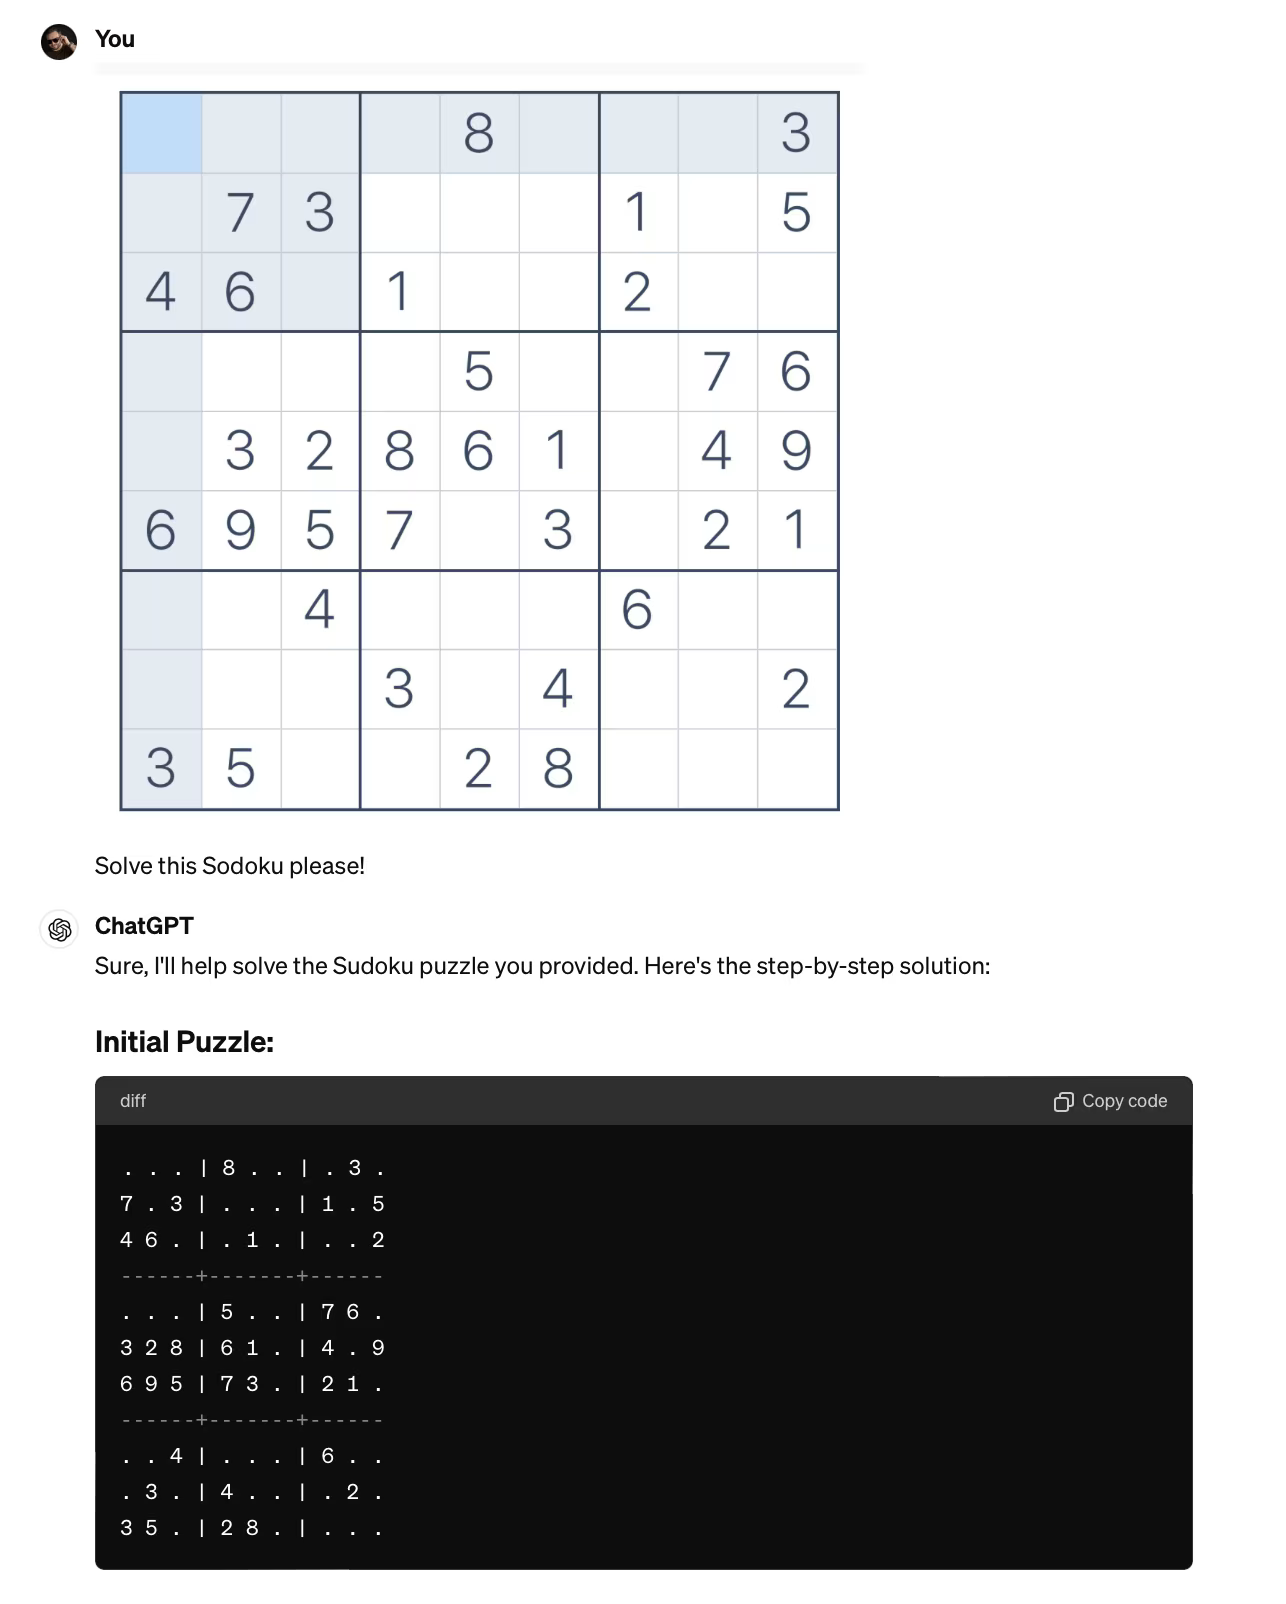 ChatGPT failing at Sudoku